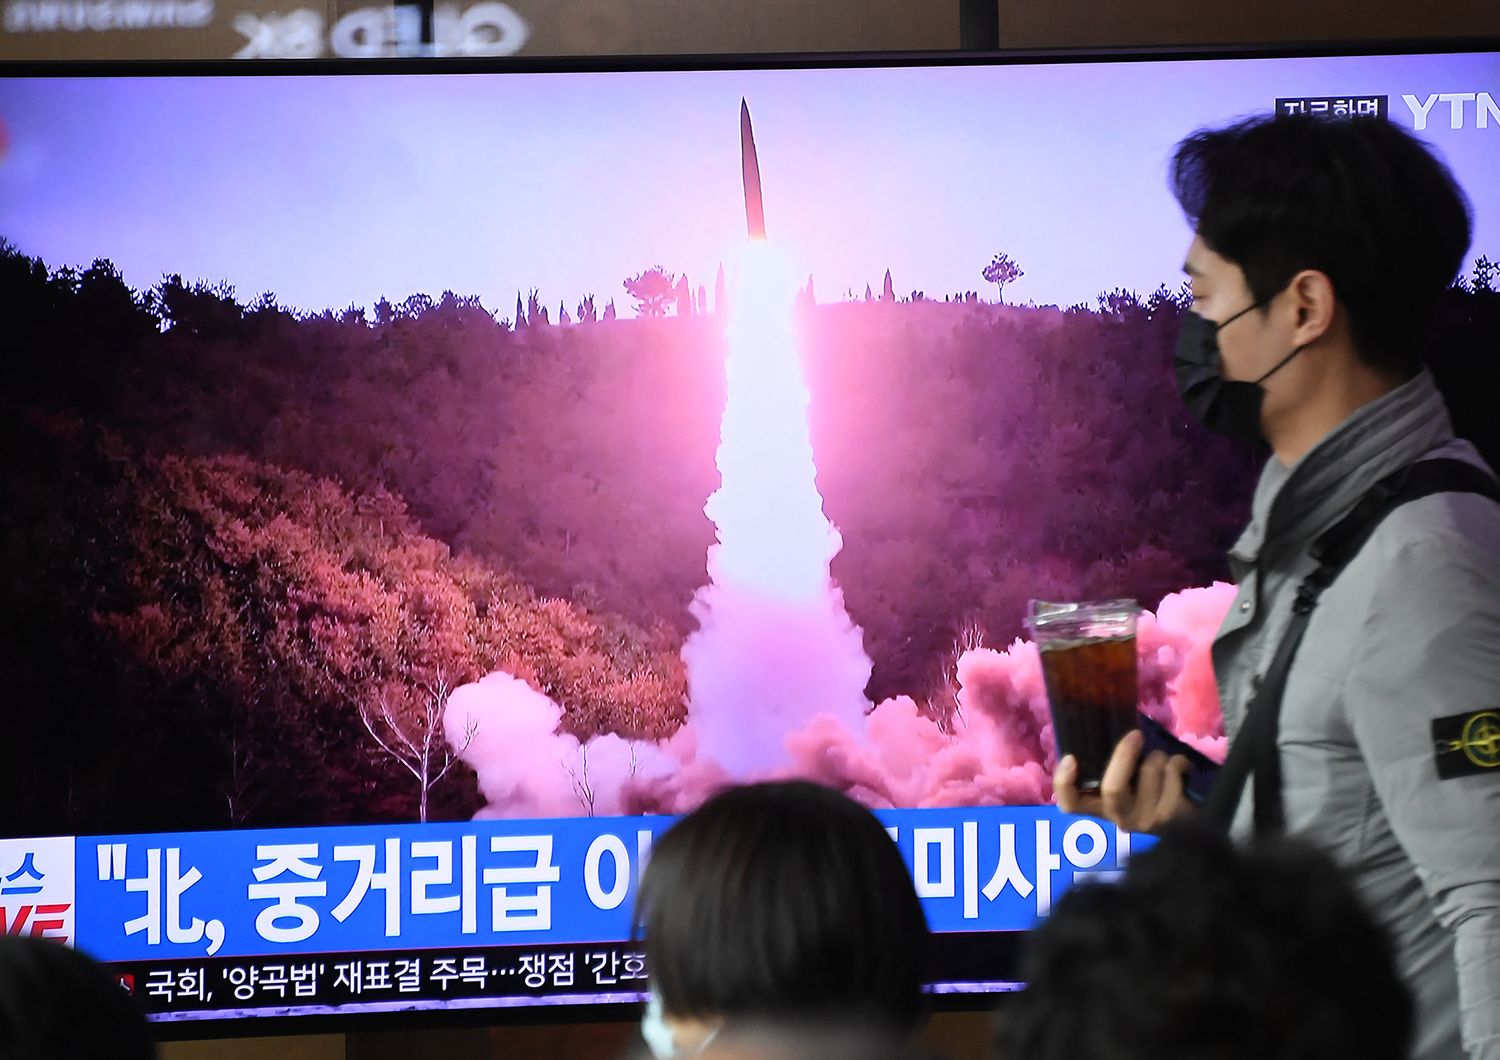 Il nuovo test missilistico nordcoreano